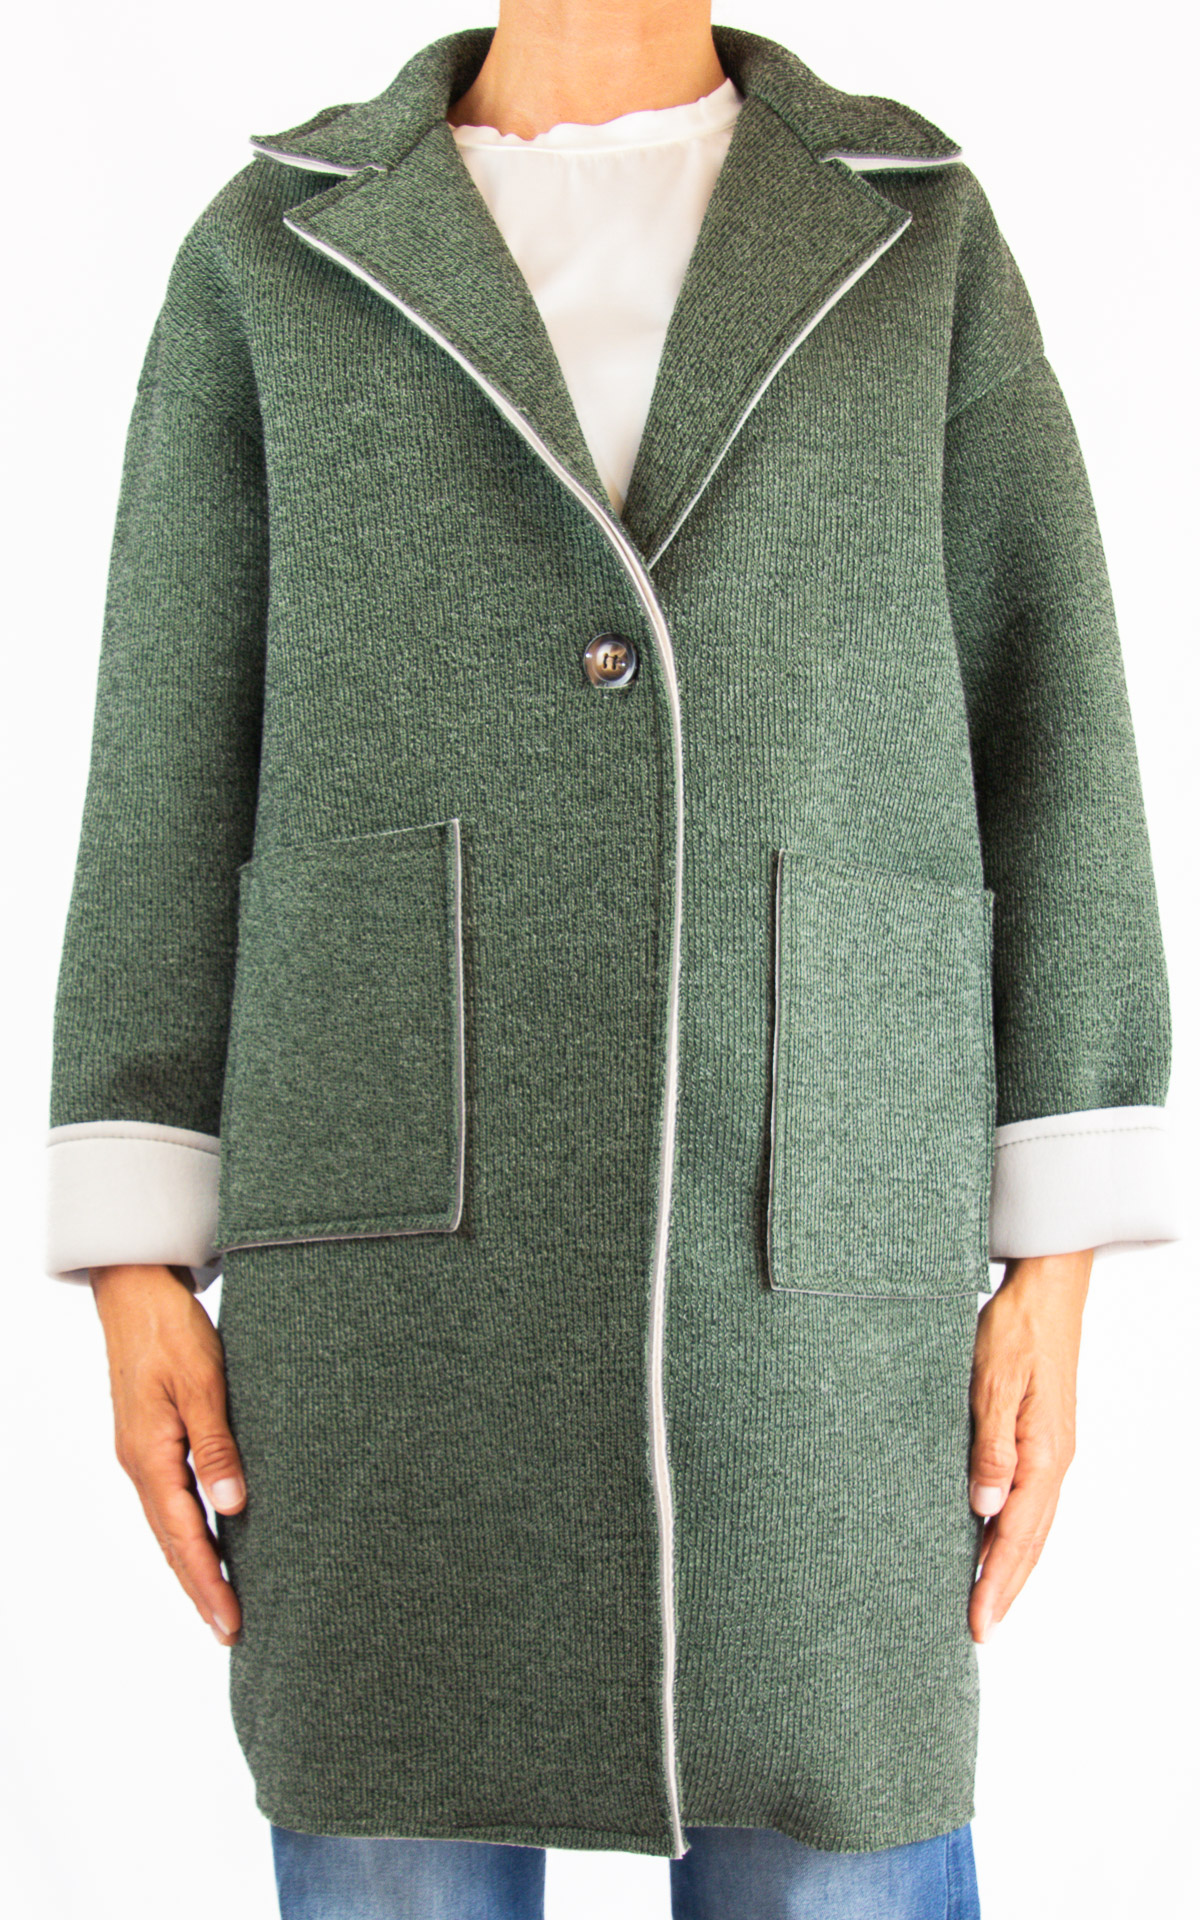 Initial - cappotto con tasche - verde